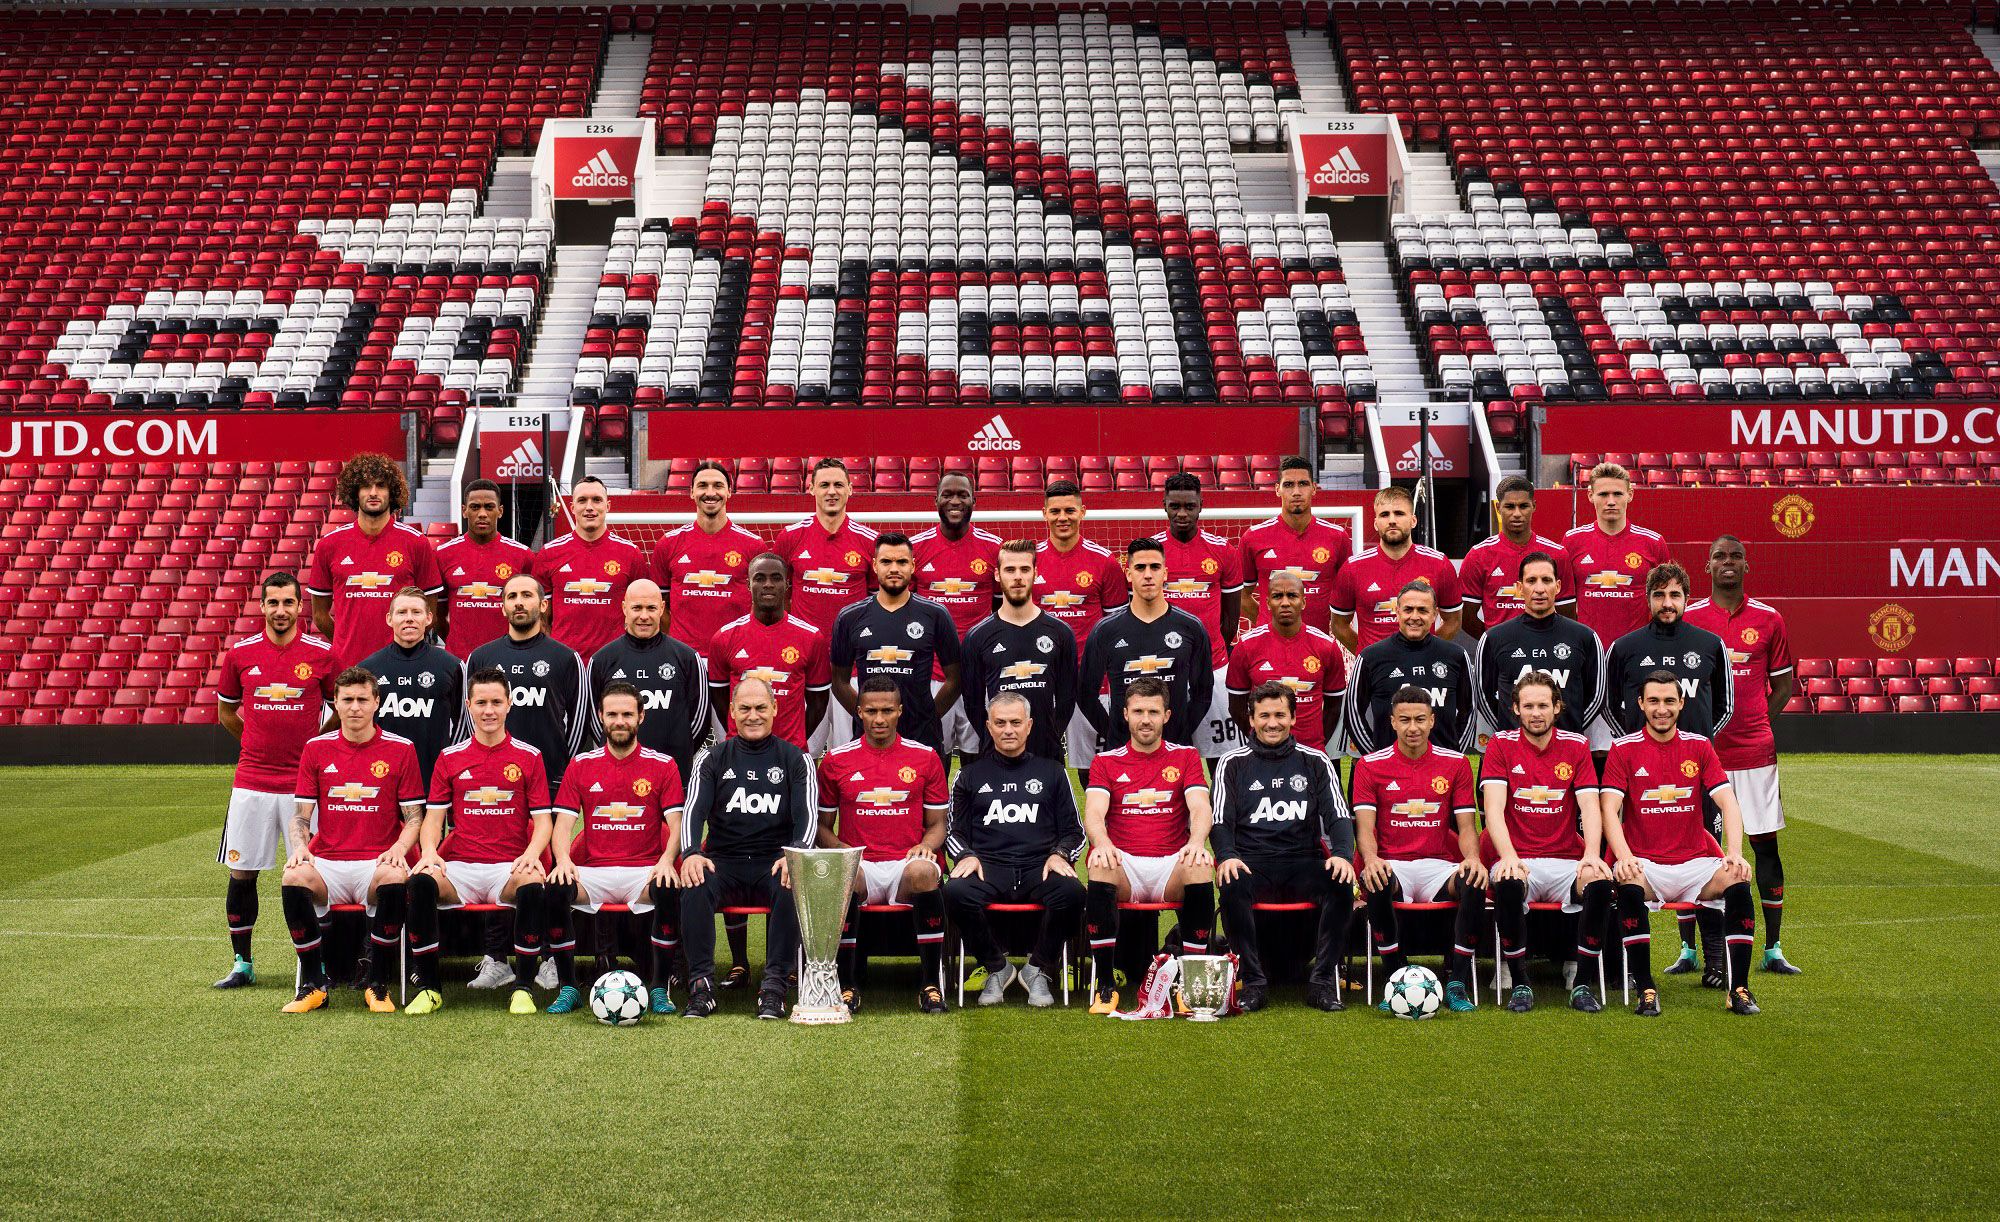 Manchester United Women's Team 2018 - HD Wallpaper 